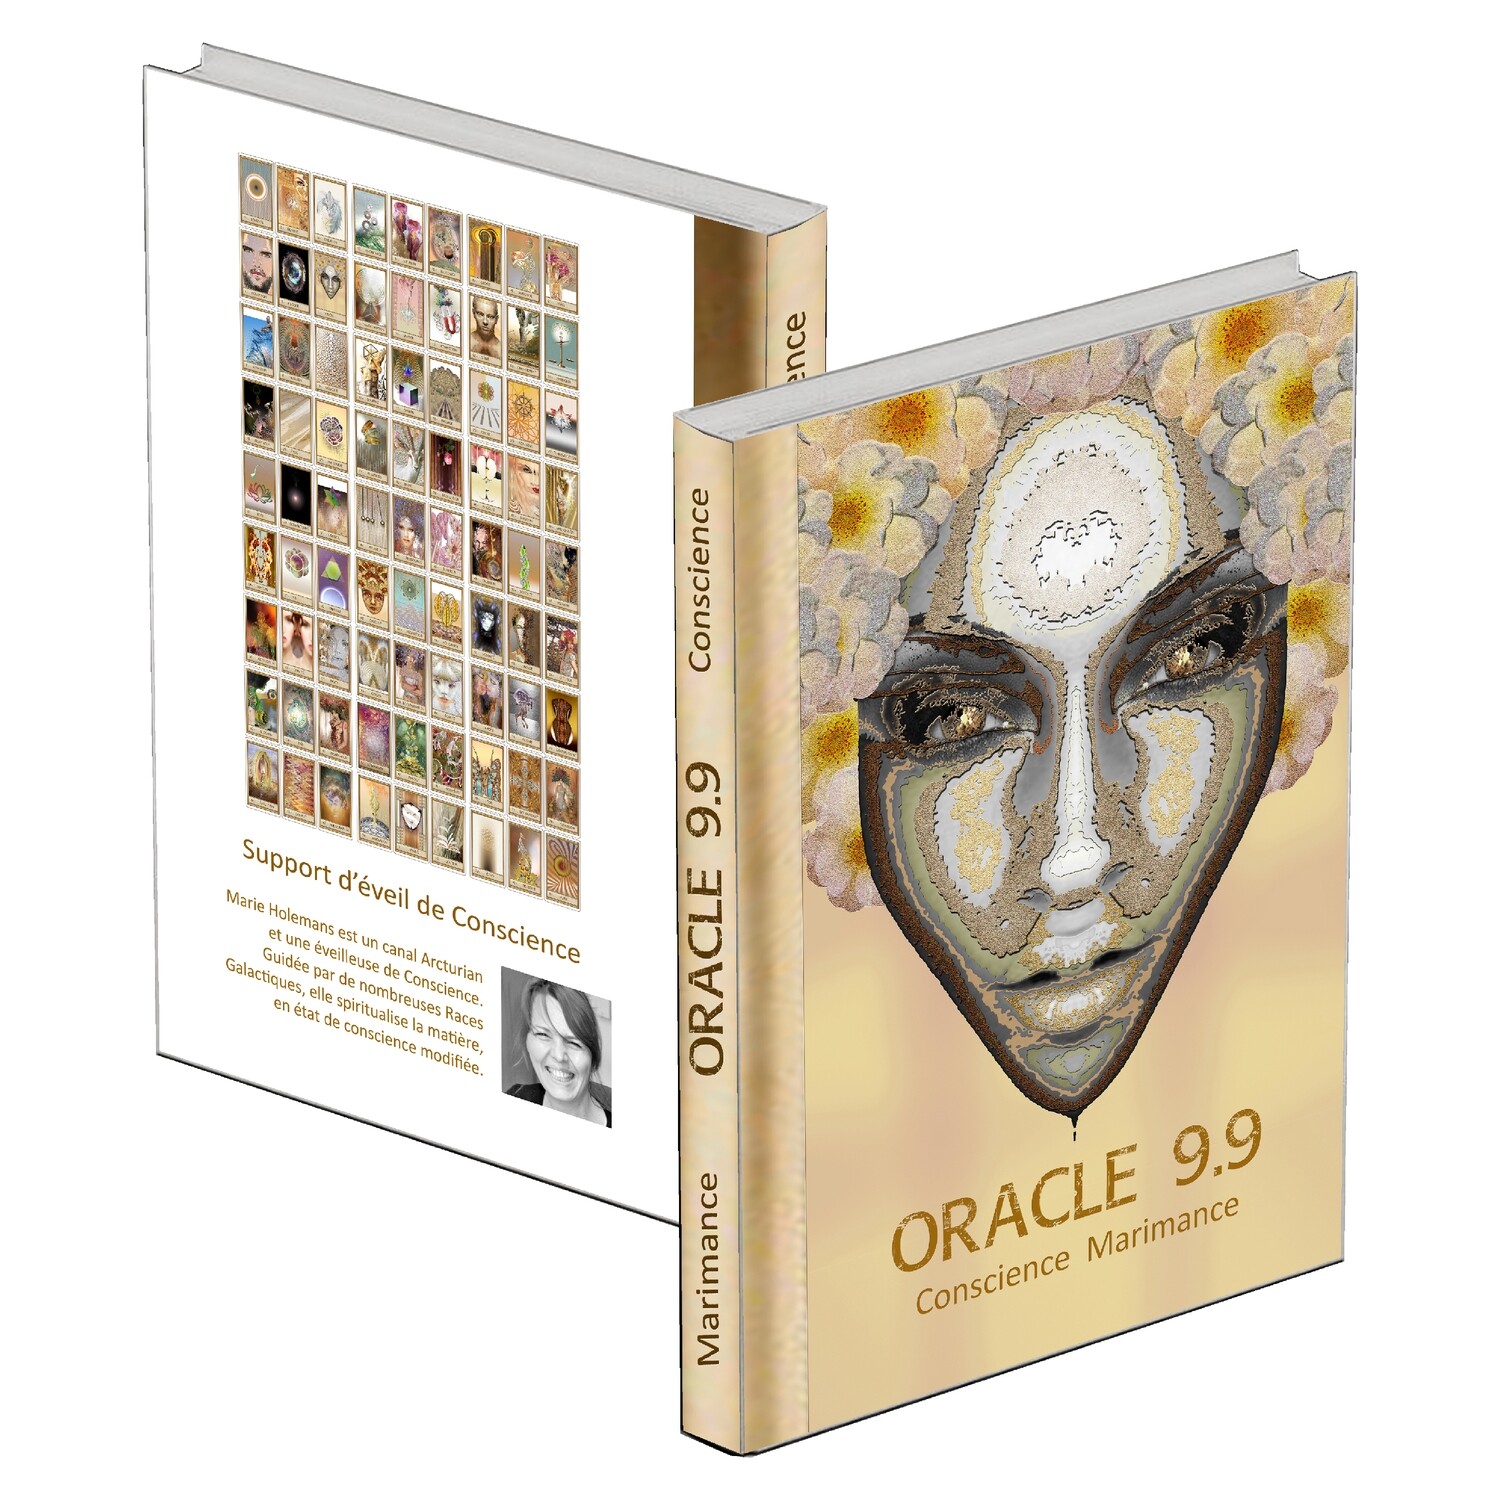 5° / Livre de l'Oracle 9.9 - 400 pages